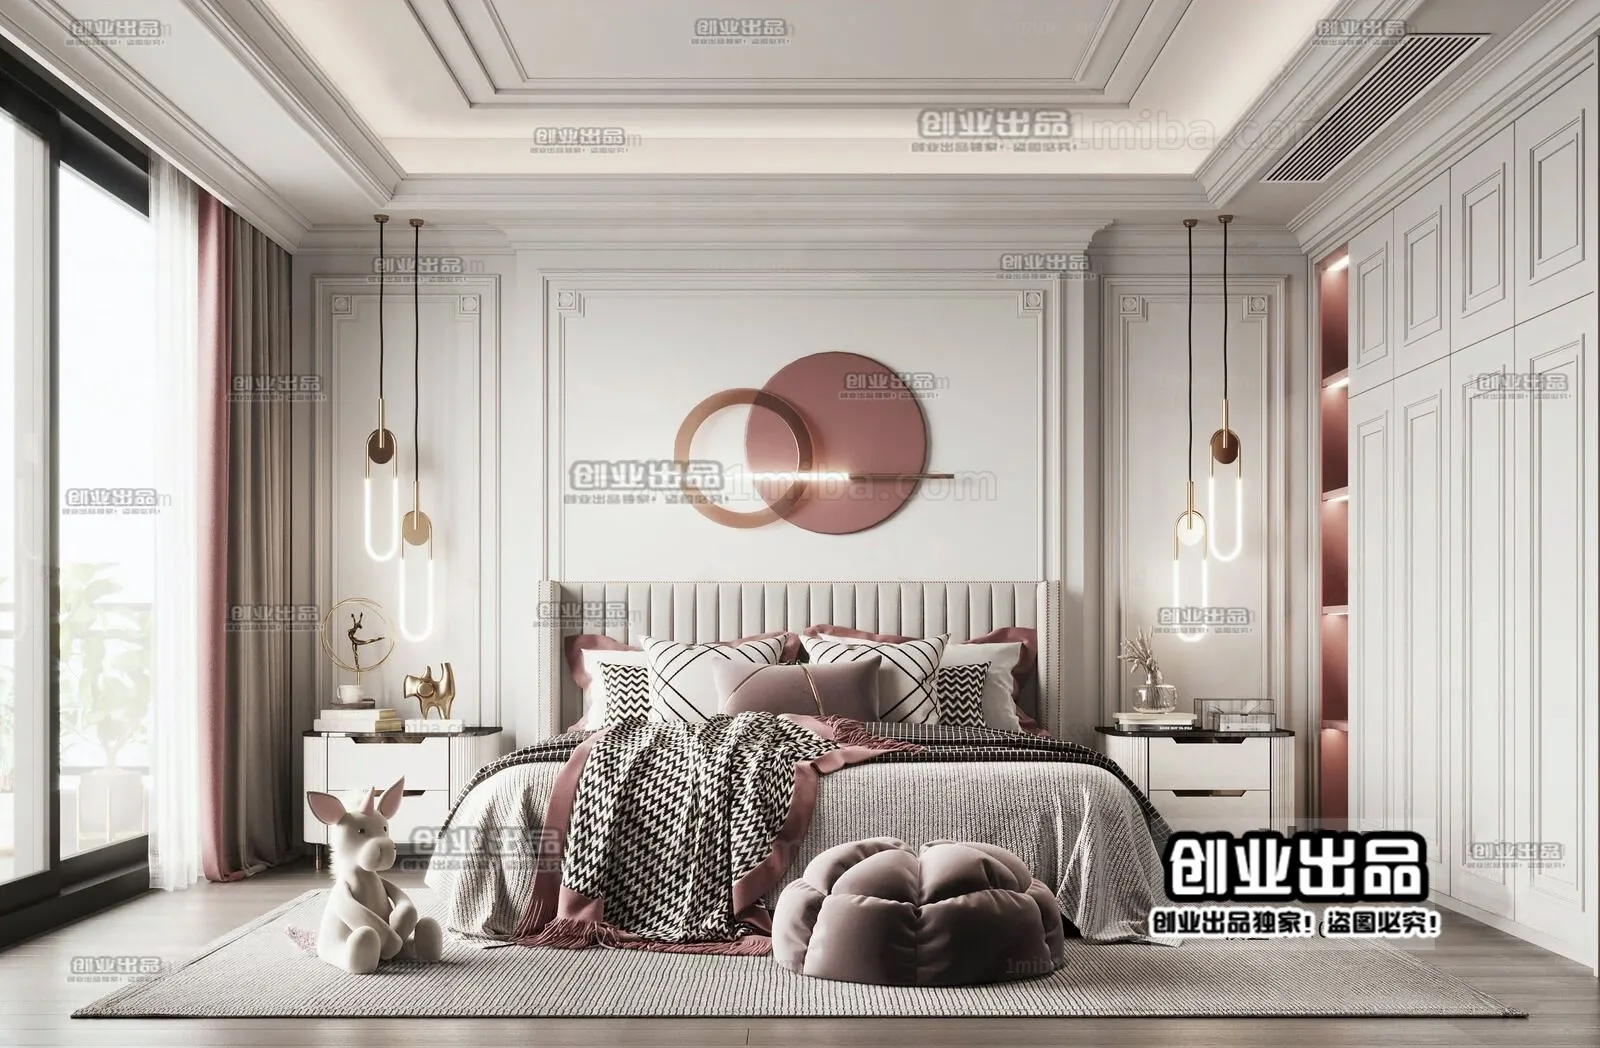 Bedroom – Modern Interior Design – 3D Models – 079